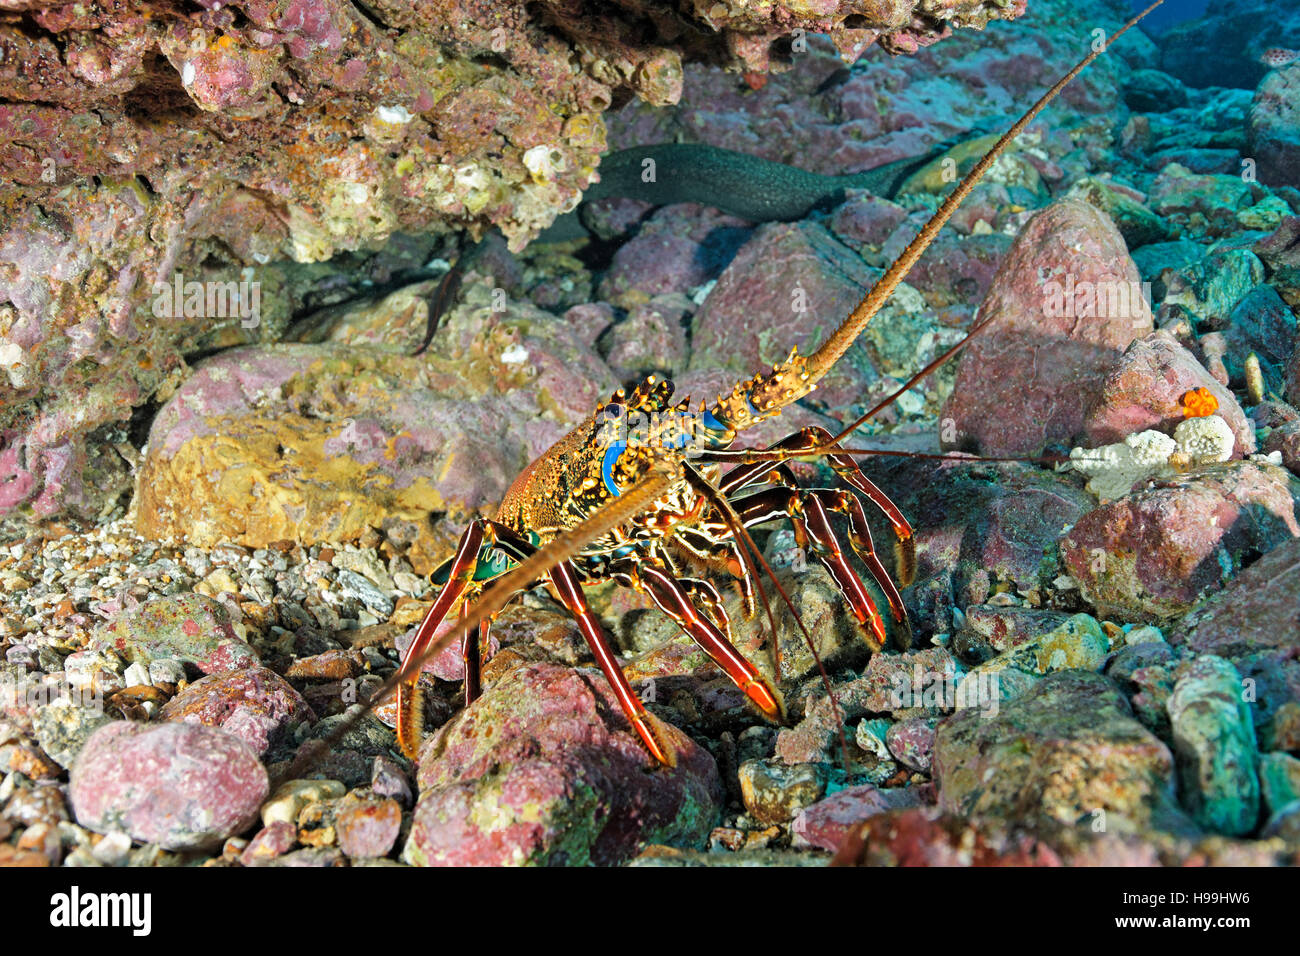 Brown aragosta, l'isola di Malpelo, Colombia, Oriente Oceano Pacifico Foto Stock